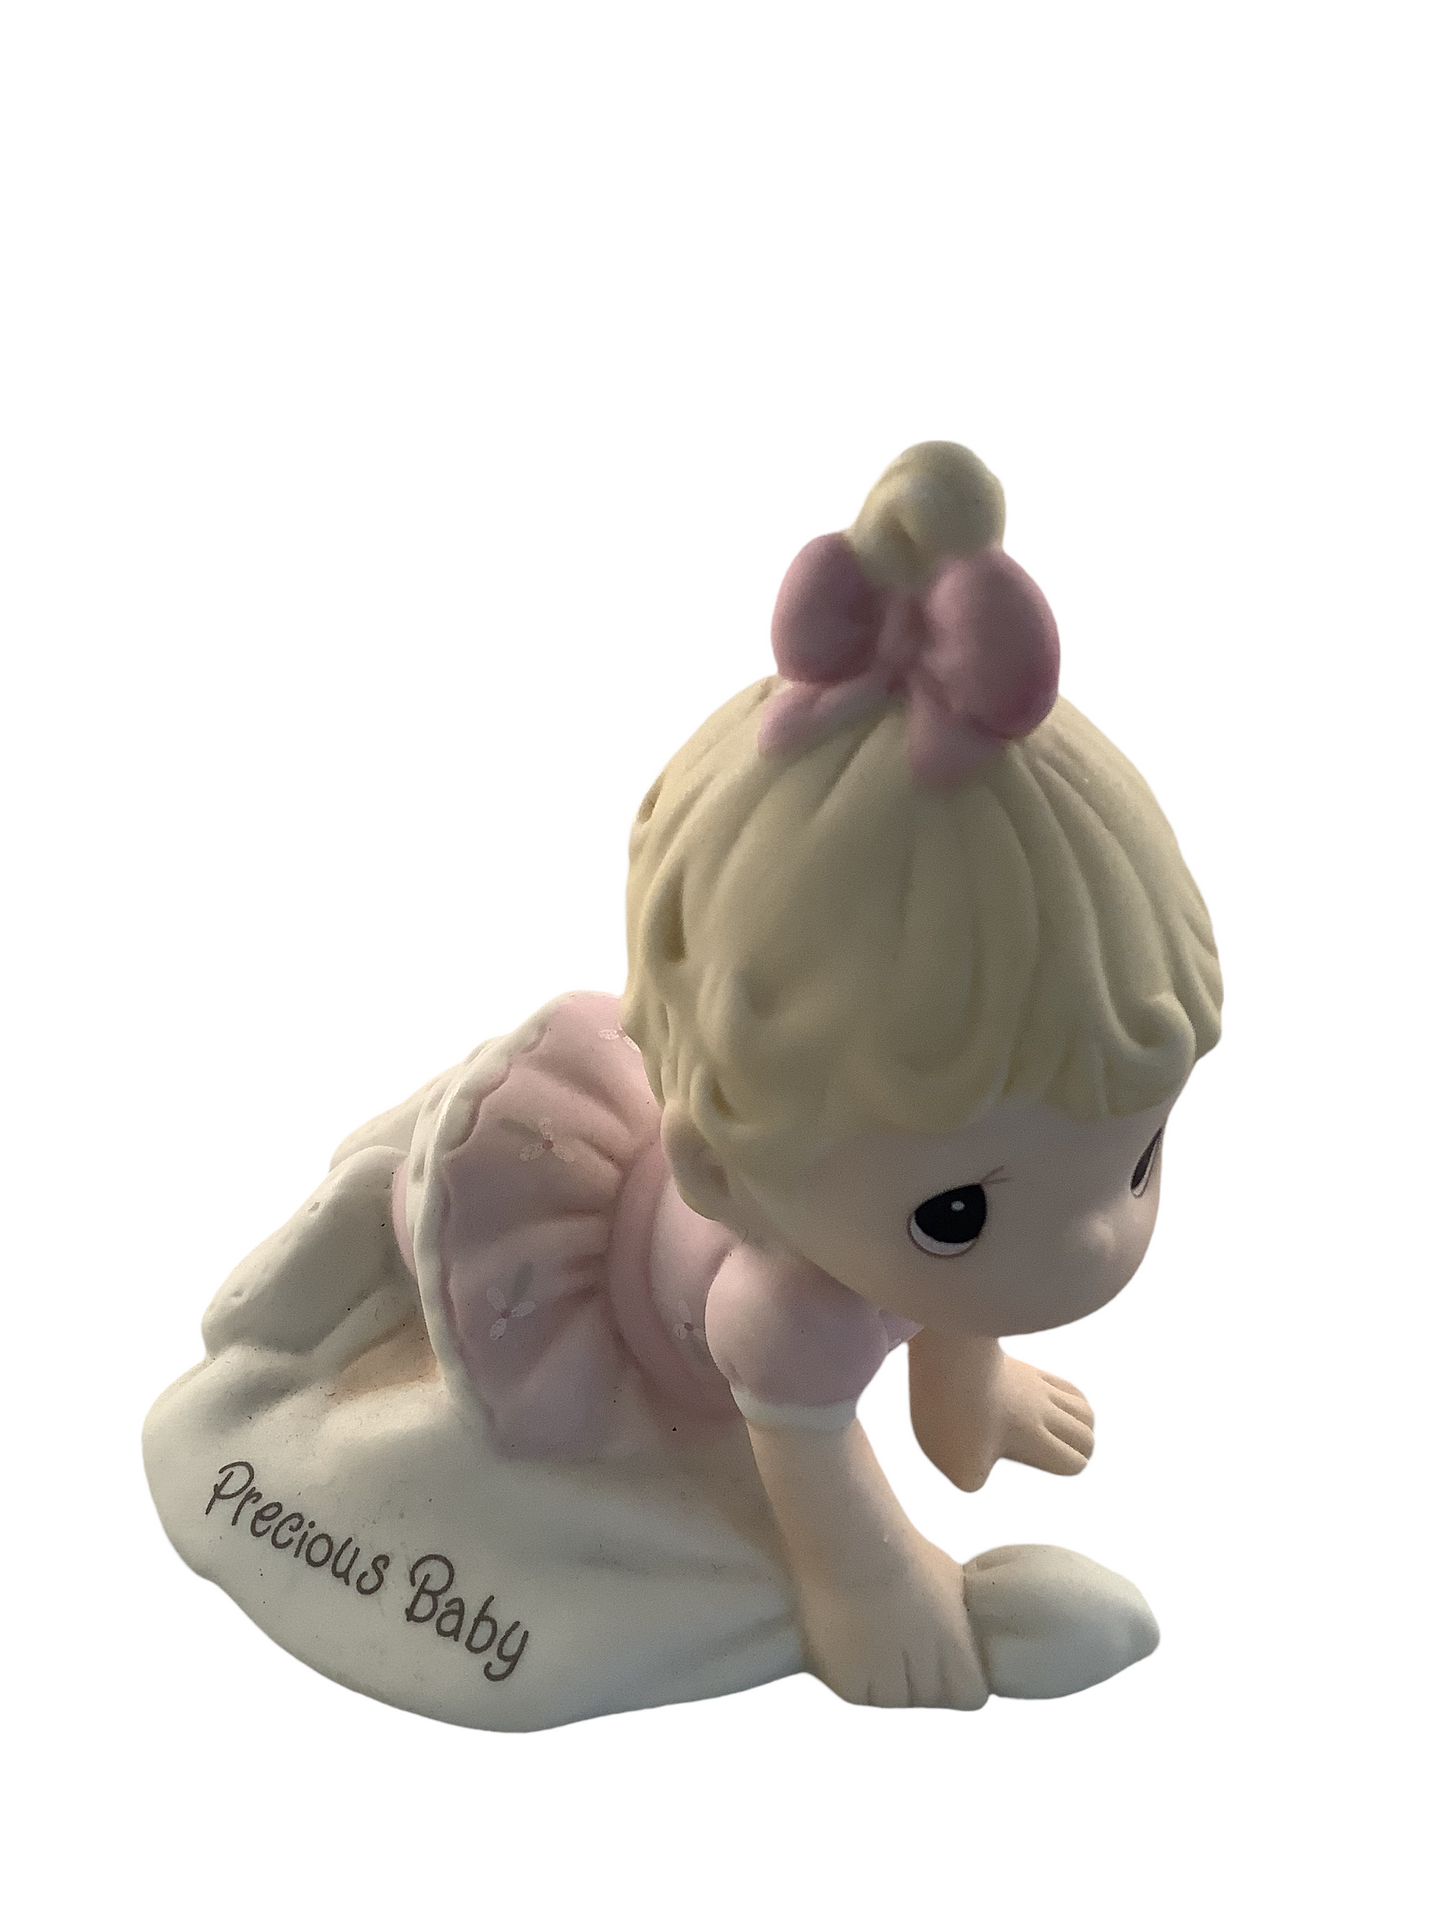 Precious Baby - Precious Moment Figurine